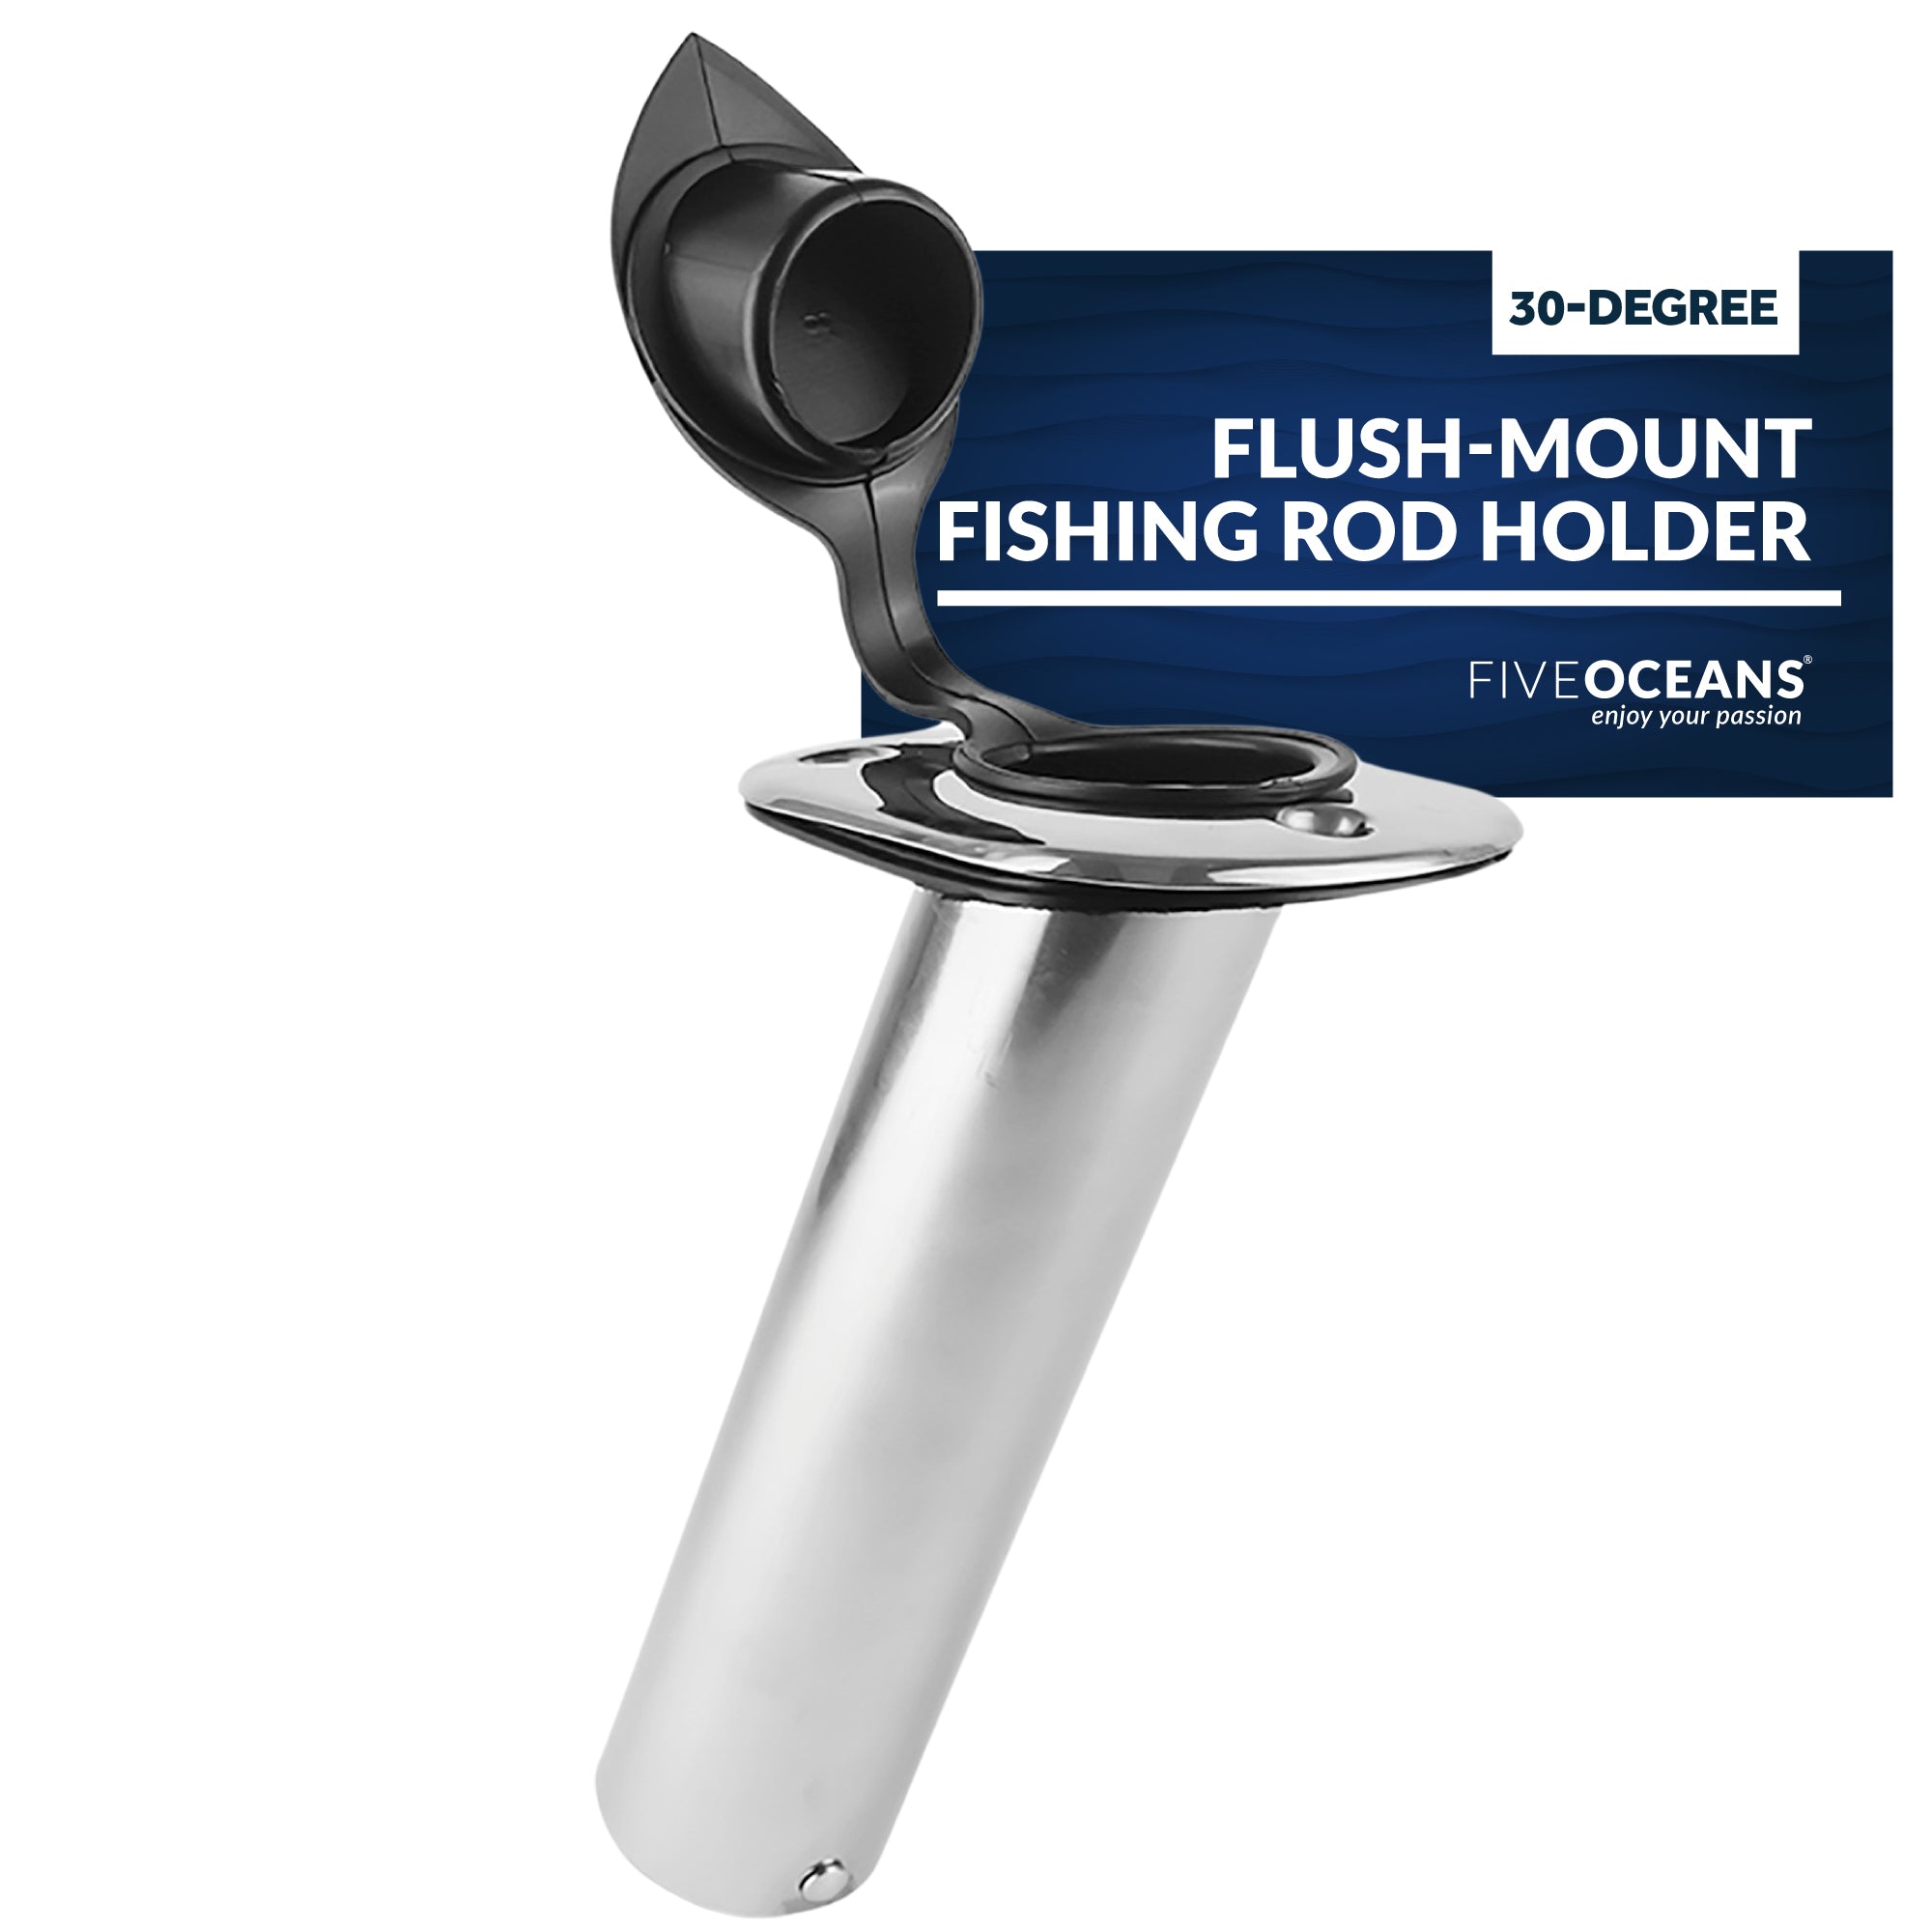 Stainless Steel Flush-Mount Fishing Rod Holder, 30-Degree Top Flange